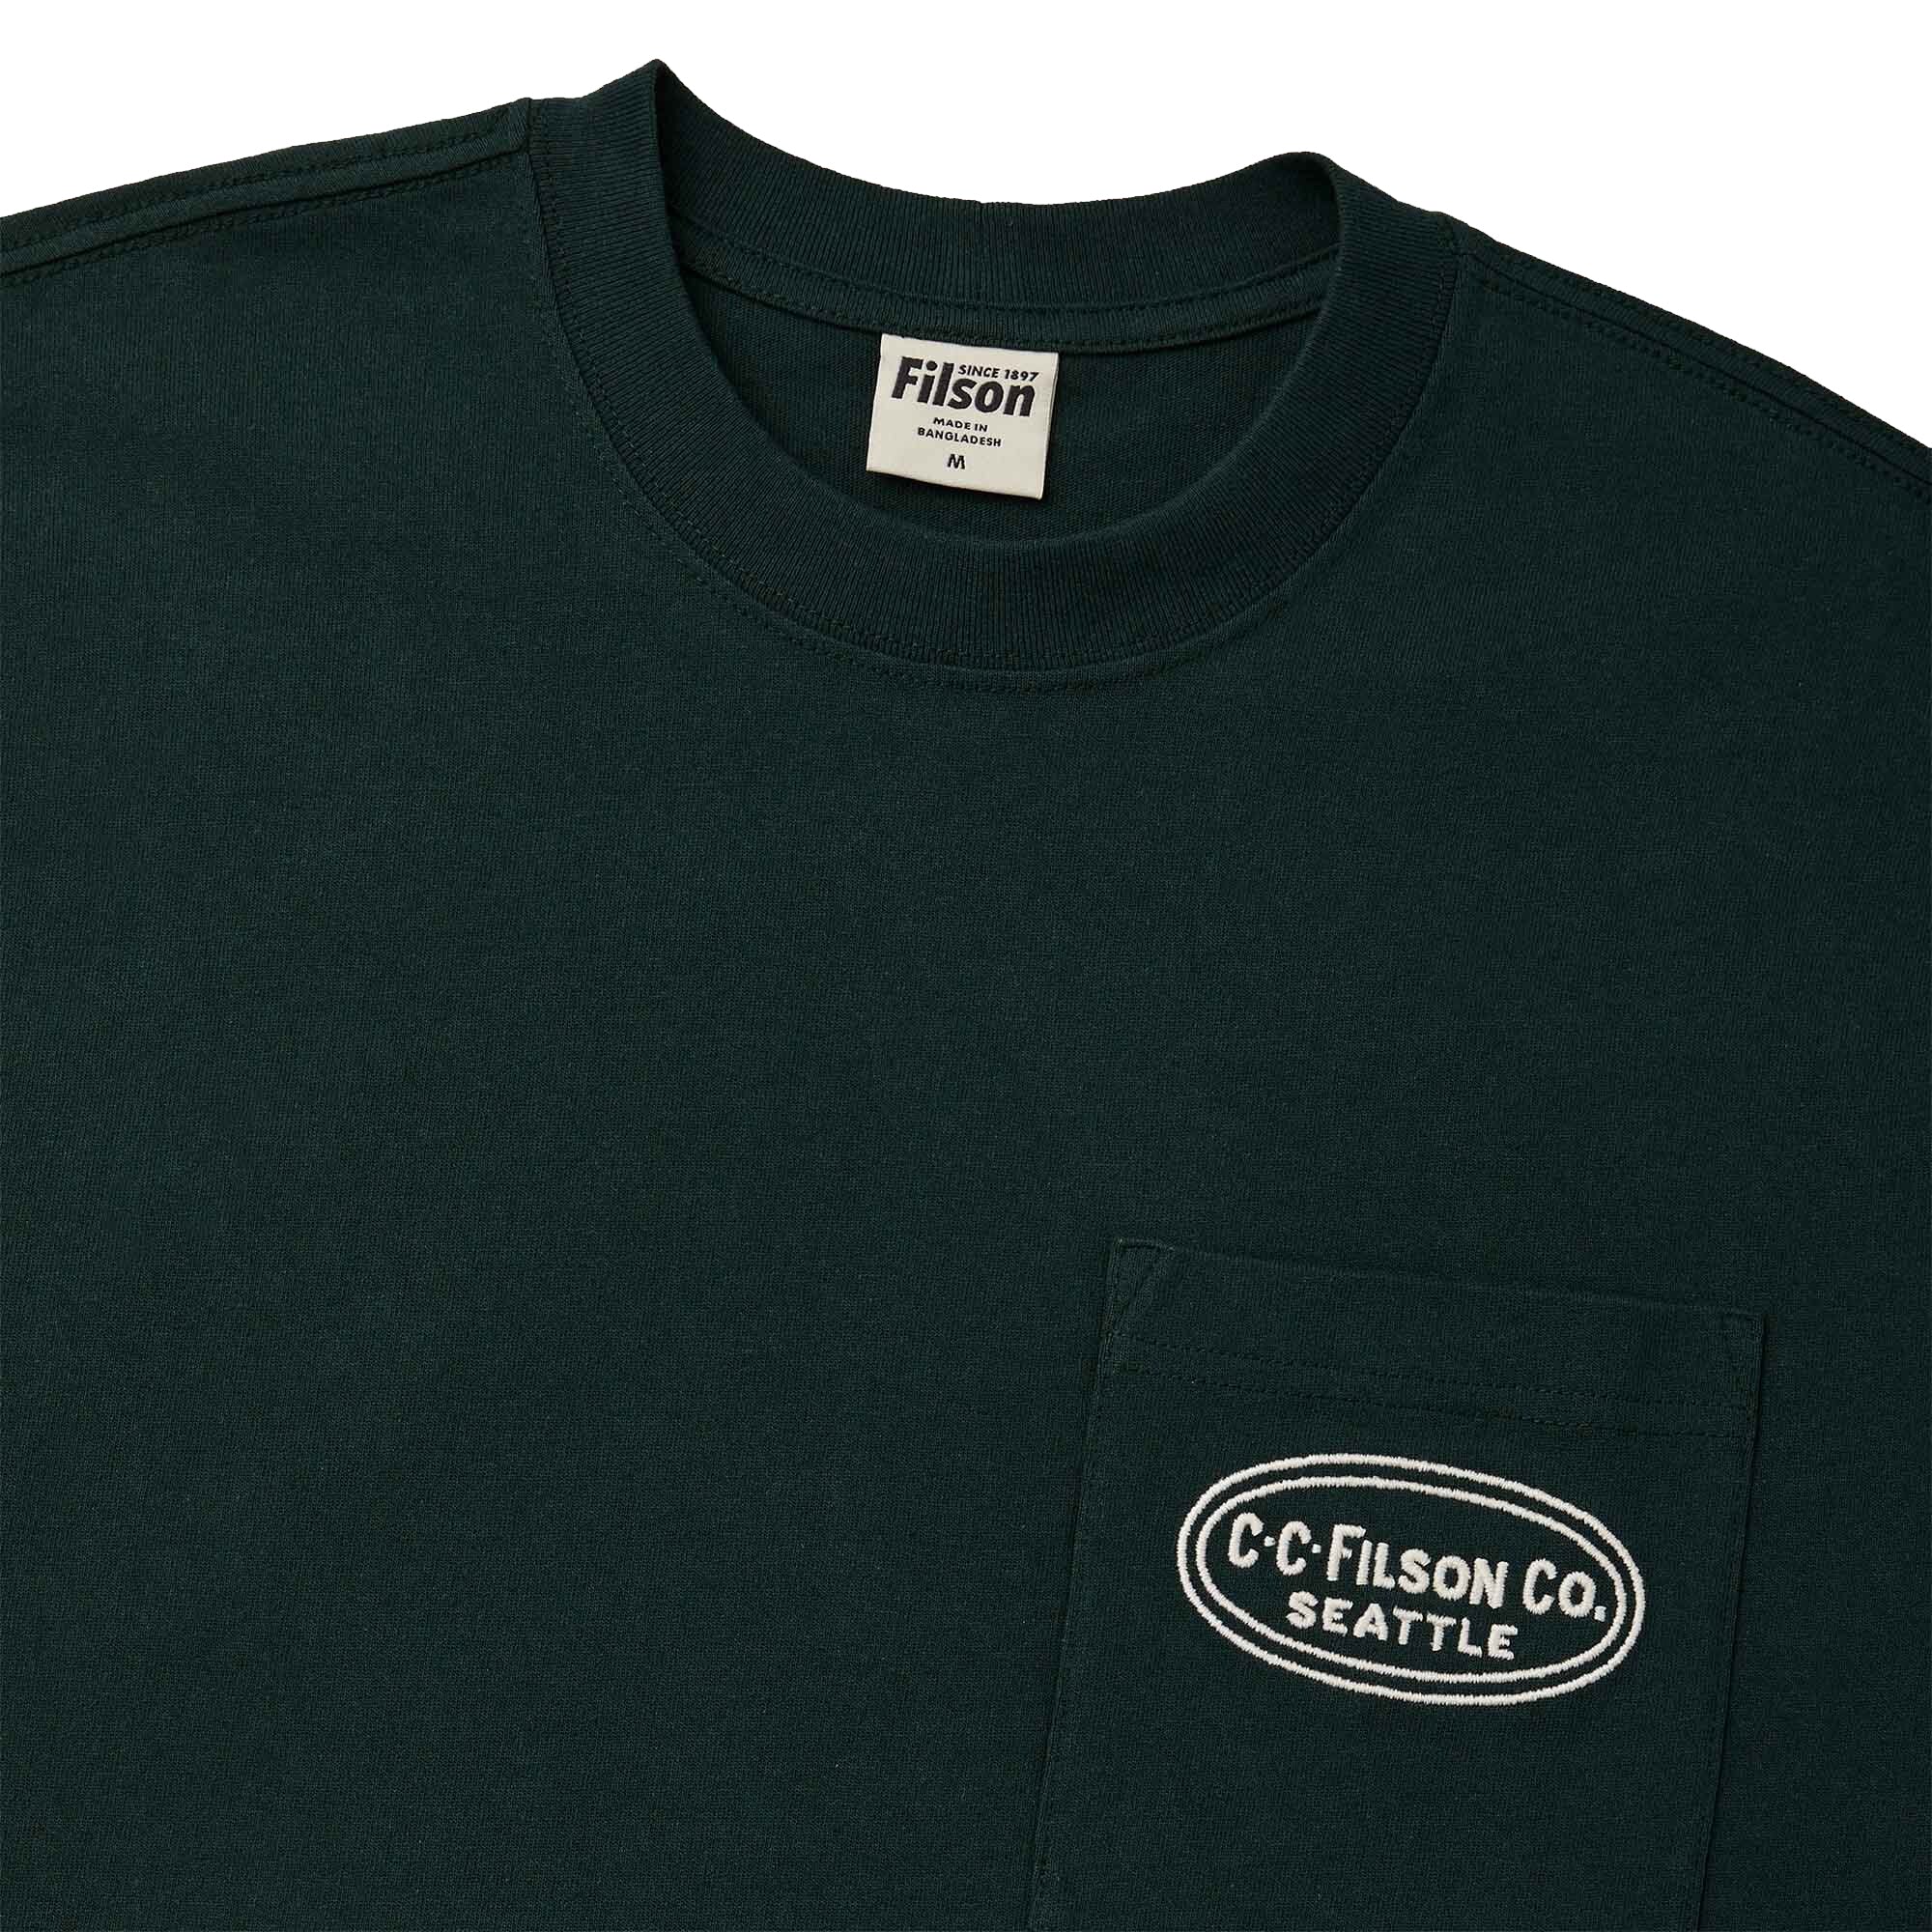 Filson SS Embroidered Pocket T-Shirt - Fir Oval